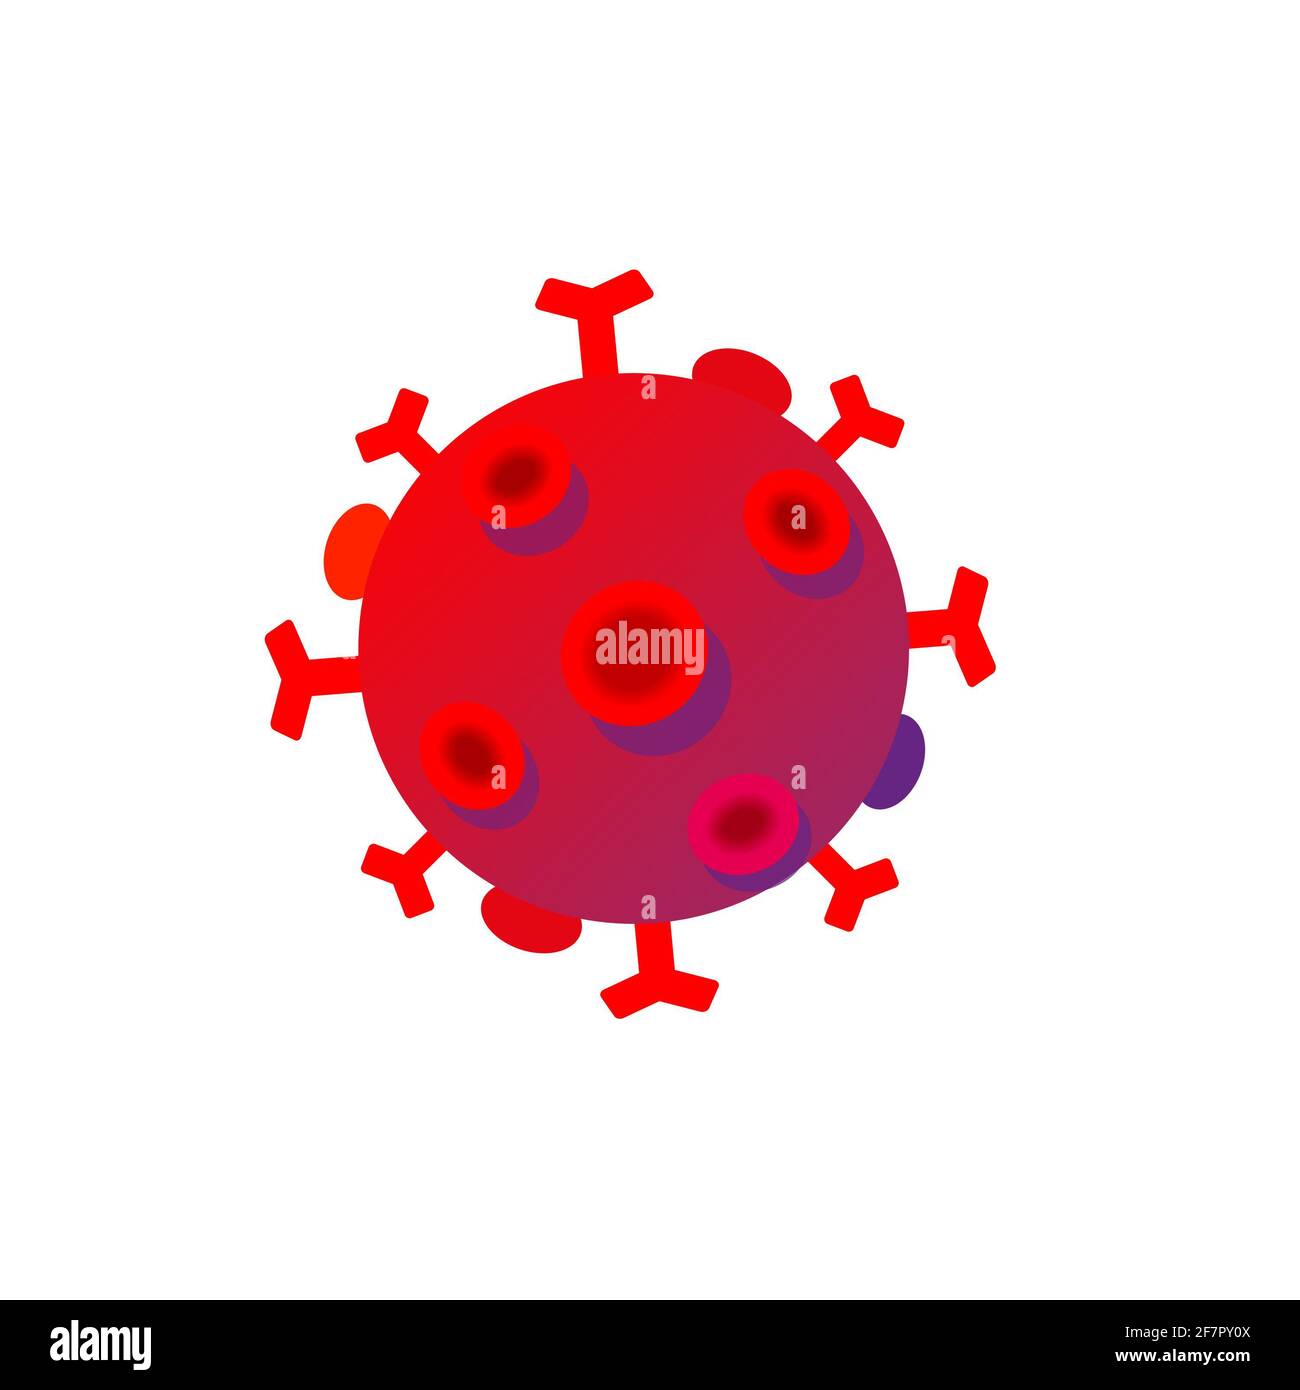 Coronavirus de la gripe vectorial, corvid 19, logotipo del virus de corona 2020, ilustración, gripe asiática. Bacterias realistas, infección por microbios y sangre, biología Foto de stock